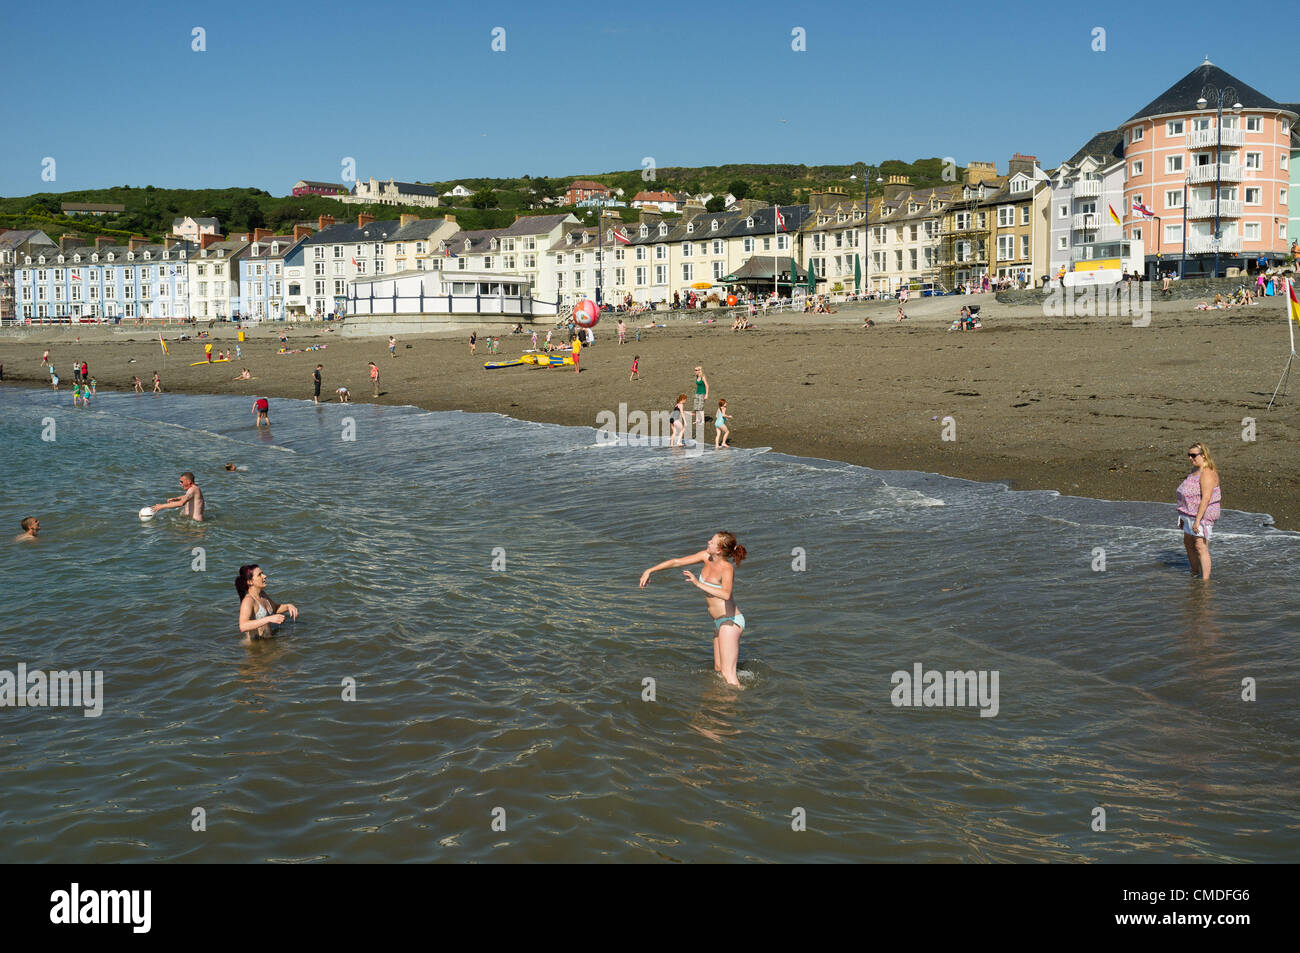 Martedì 24 luglio 2012. Aberystwyth, Wales, Regno Unito. Il clima caldo continua in tutto il Regno Unito con temperature in alta 20s (in gradi celsius). Persone godetevi il sole sulla spiaggia ed in mare in questo Welsh resort costiero. Foto Stock